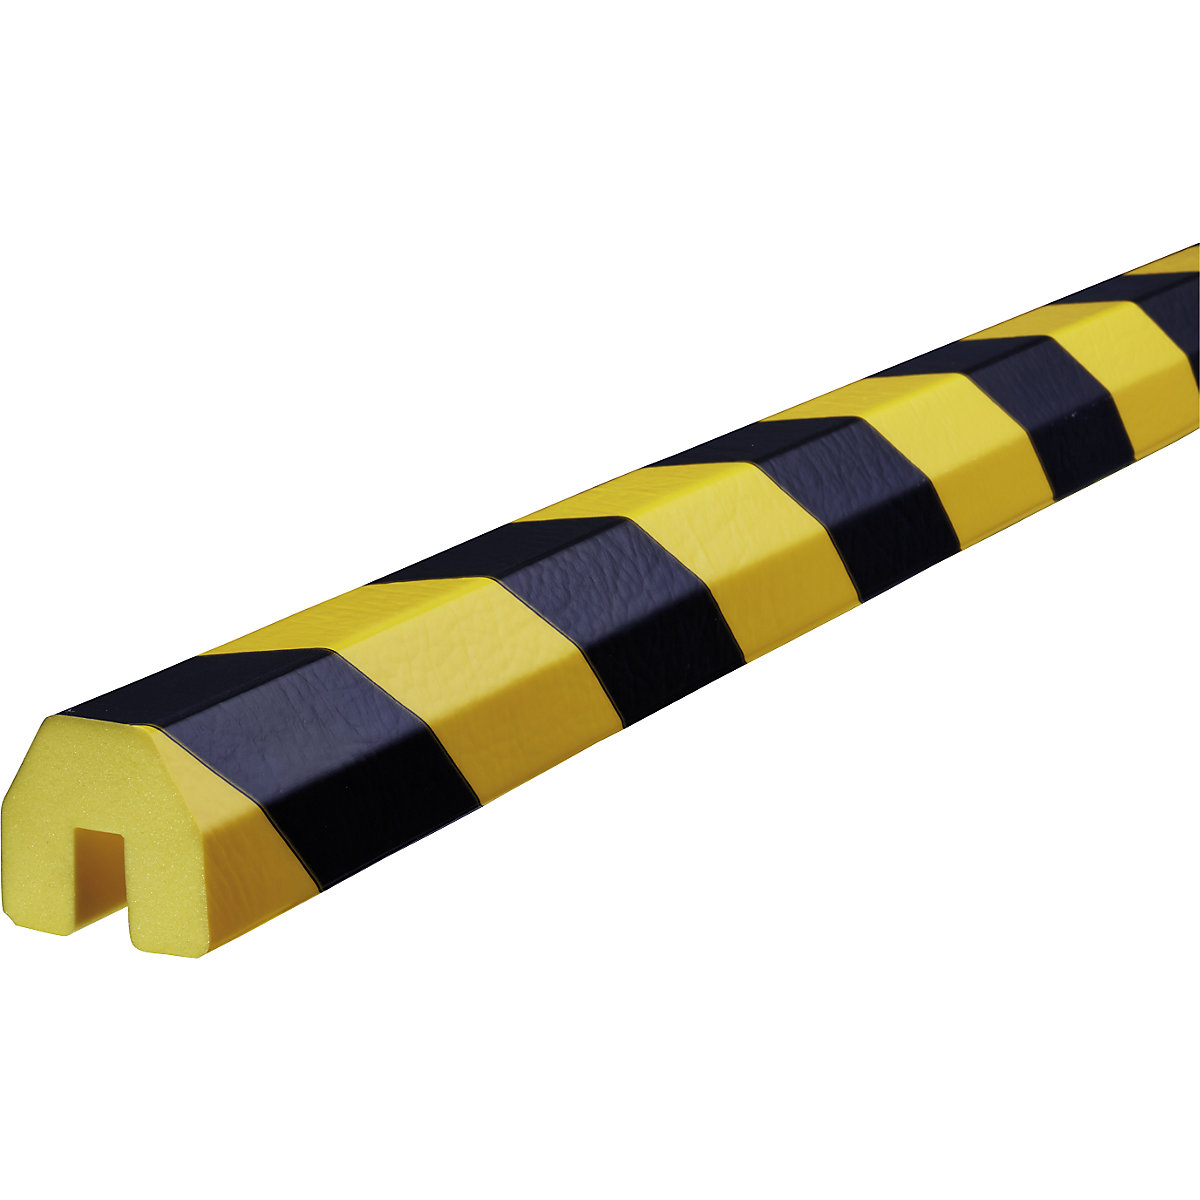 Knuffi®-randbescherming – SHG, type BB, stuk van 1 m, zwart/geel-19